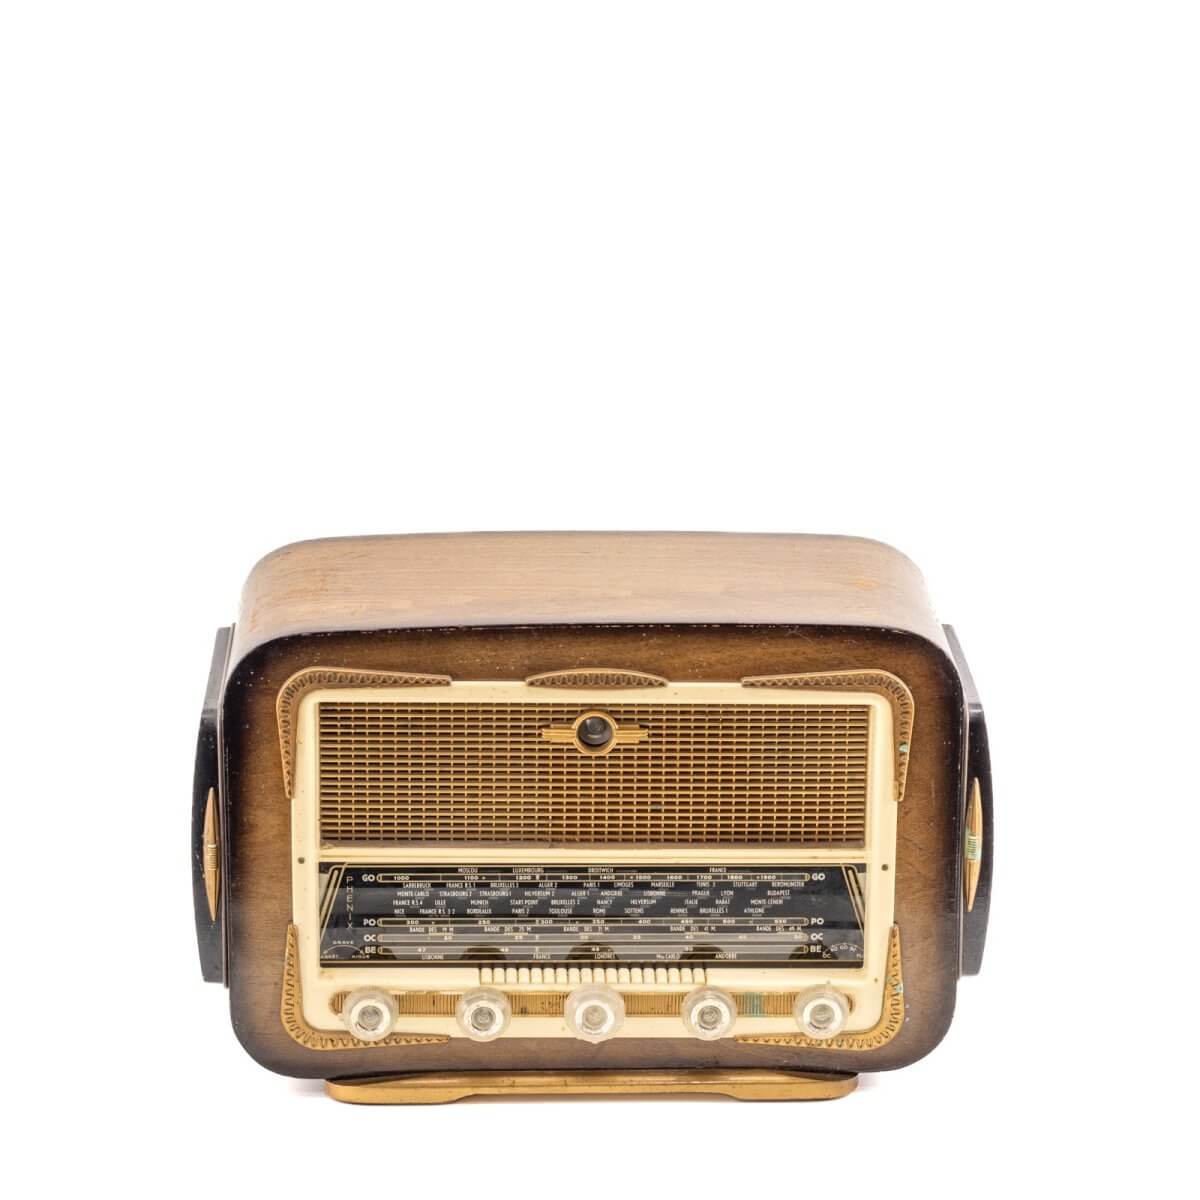 Radio Bluetooth Phenix Vintage 50’S-A.bsolument-enceintes-et-radios-vintage-bluetooth